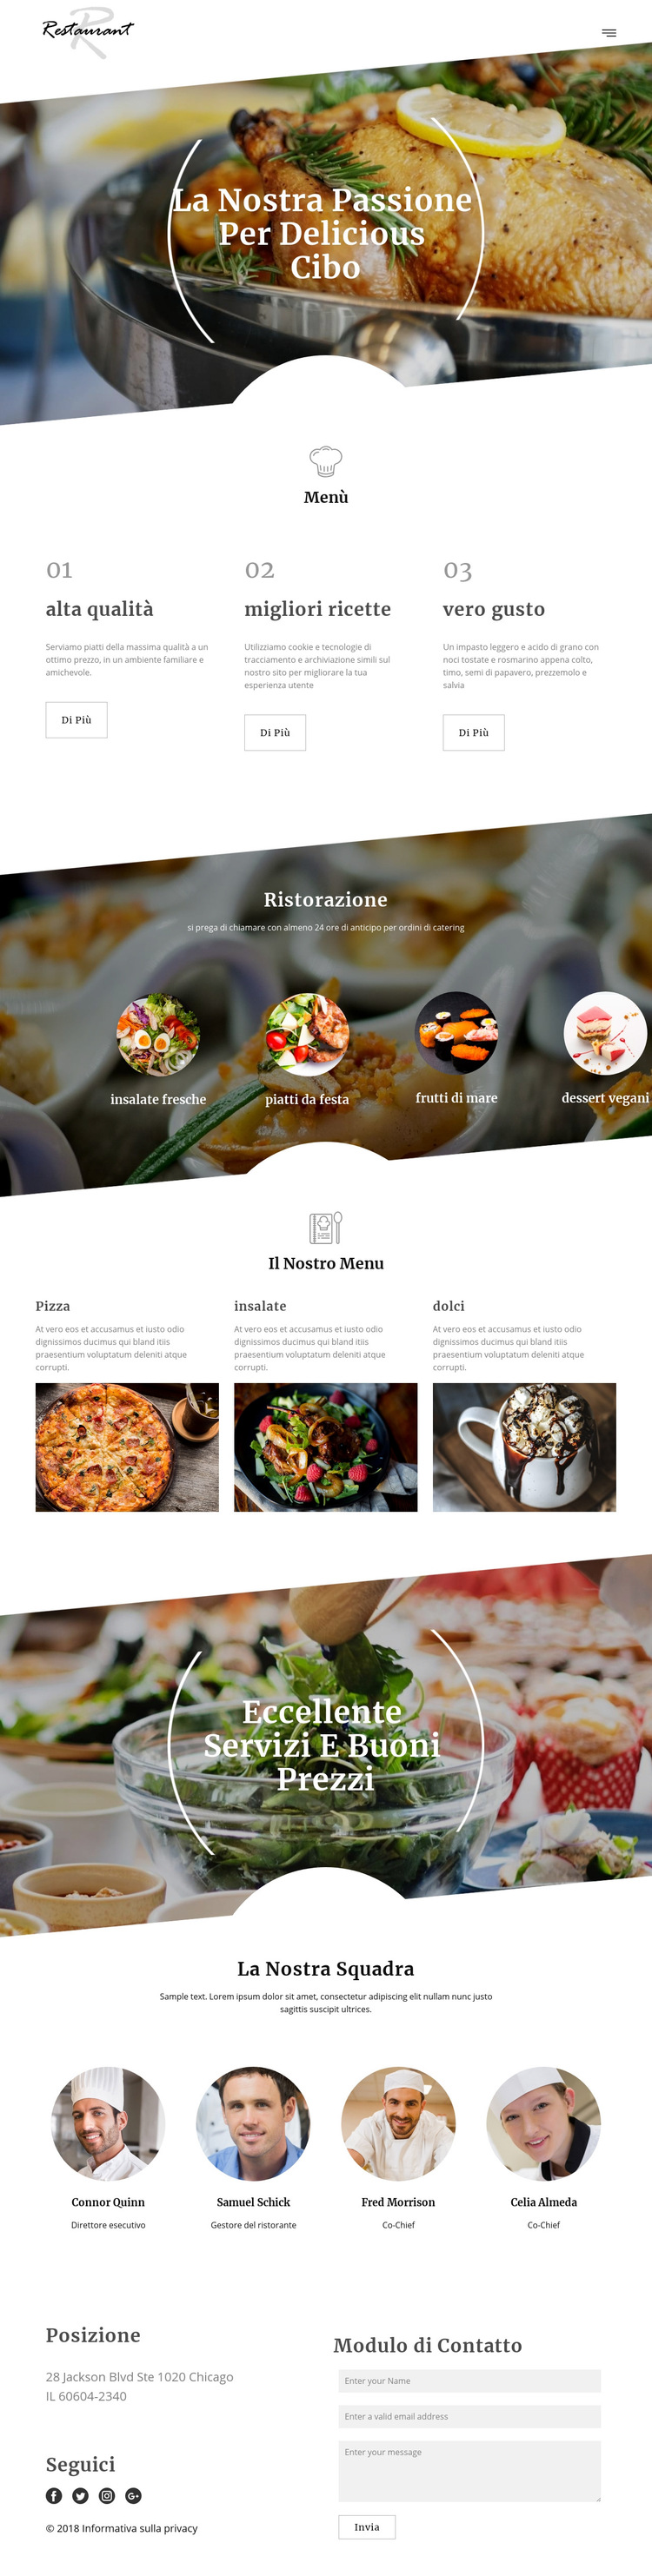 Ricette dello chef esecutivo Modello di sito Web